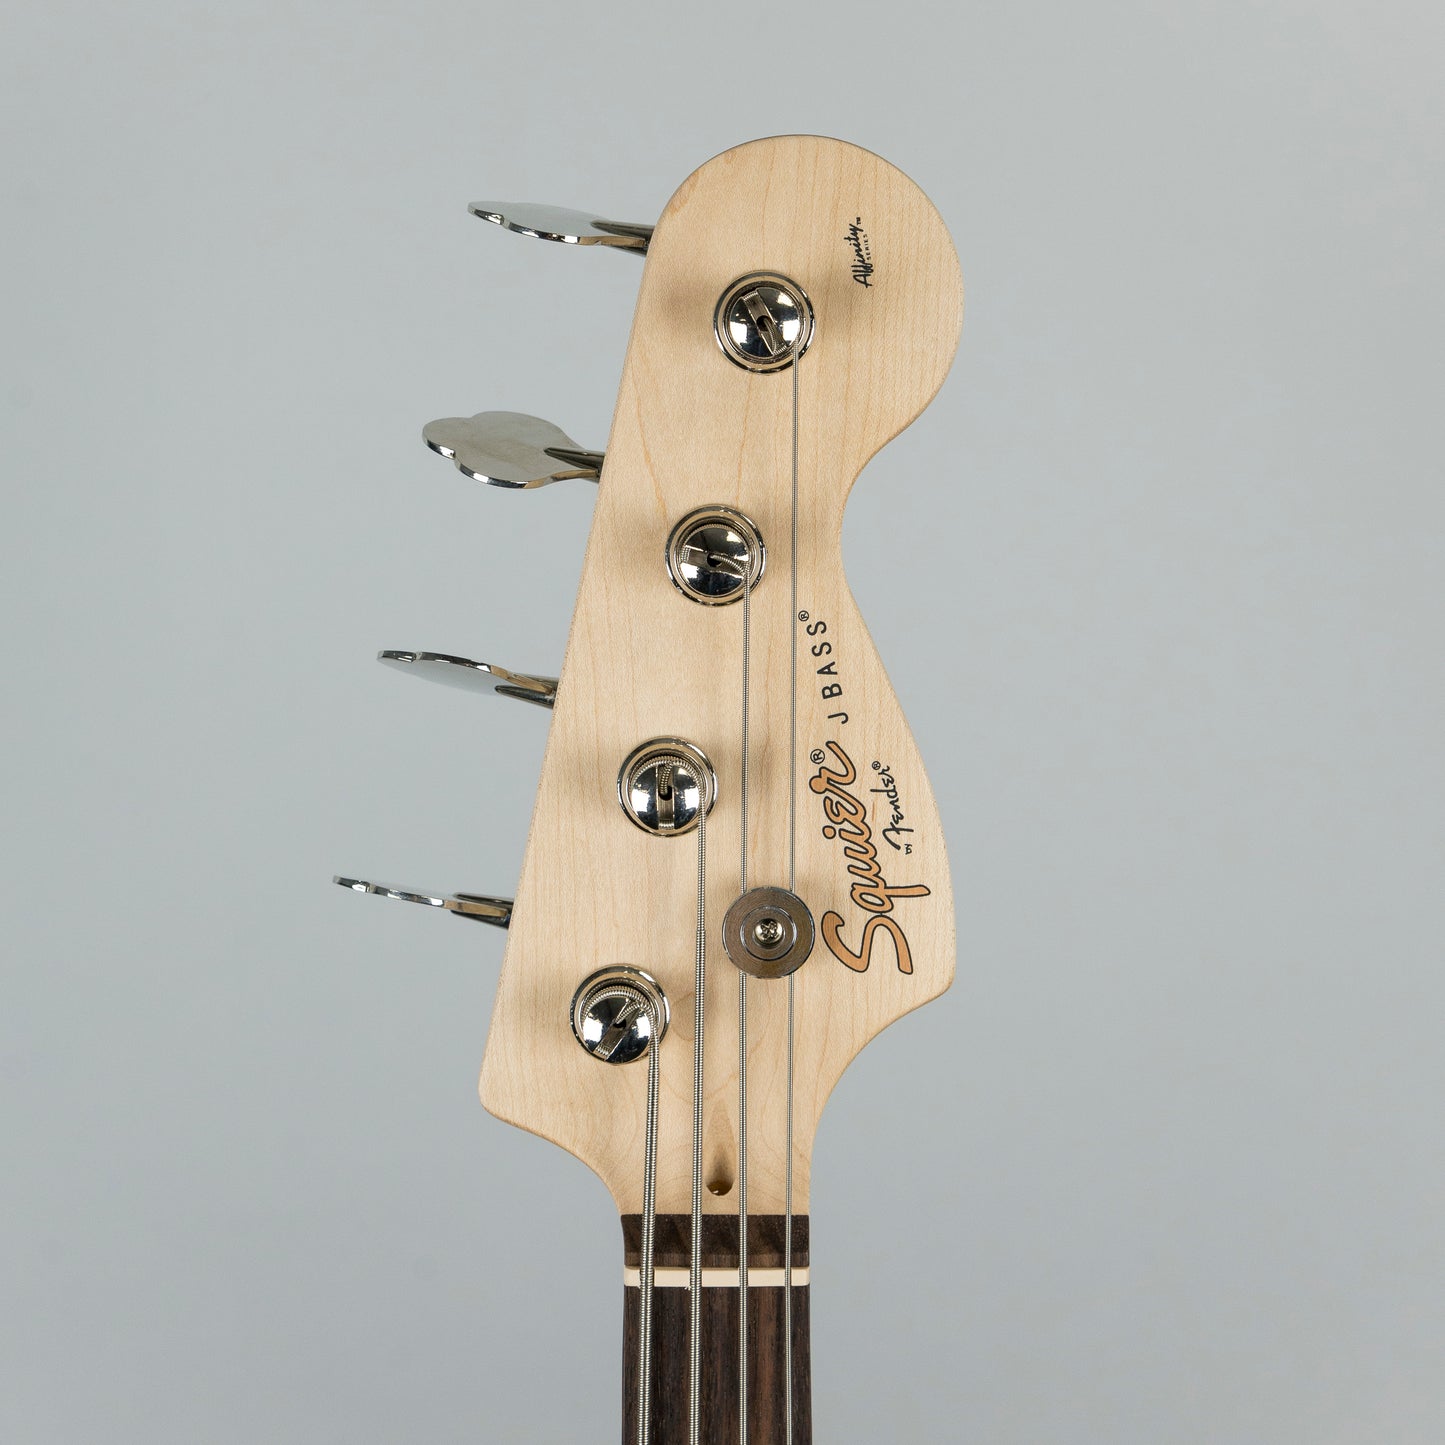 Squier Affinity Series Jazz Bass Guitar in Brown Sunburst